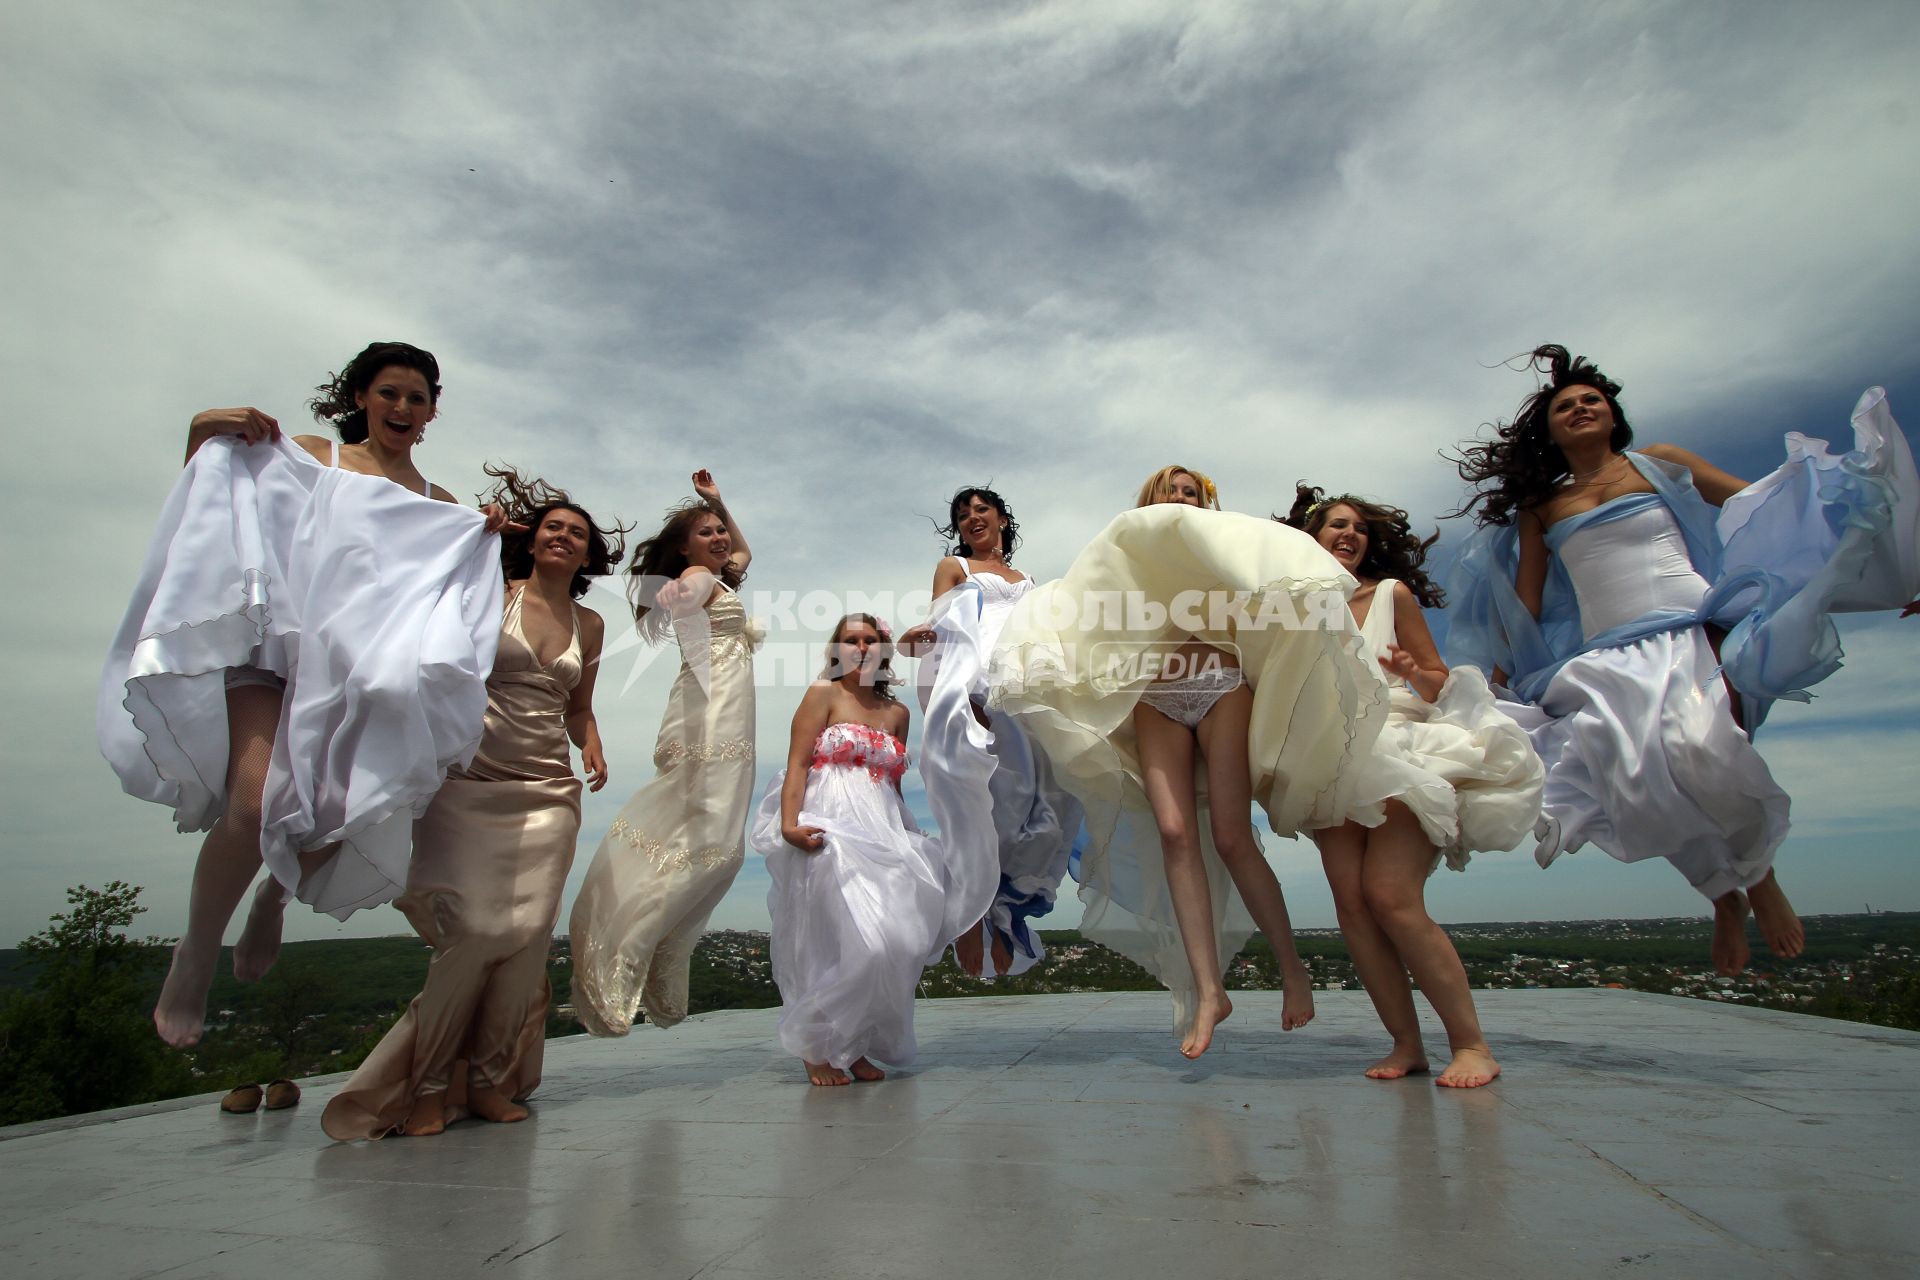 Прыгающие невесты во время парада невест, Крепостная горка, г. Ставрополь, 29 мая 2011 года.